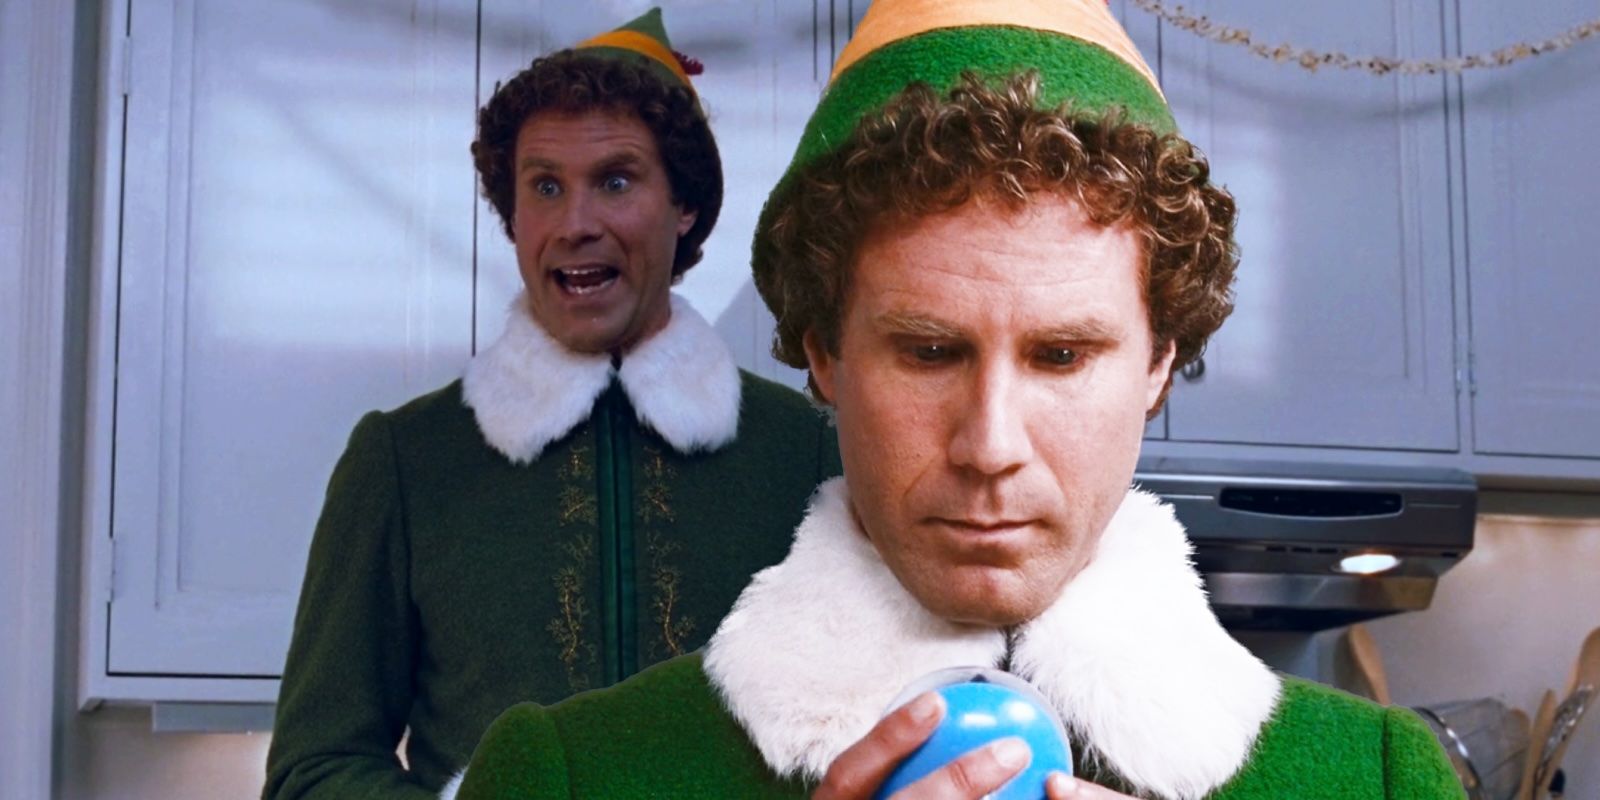 La inspiración detrás de Elf demuestra por qué se ha convertido en un conmovedor clásico navideño